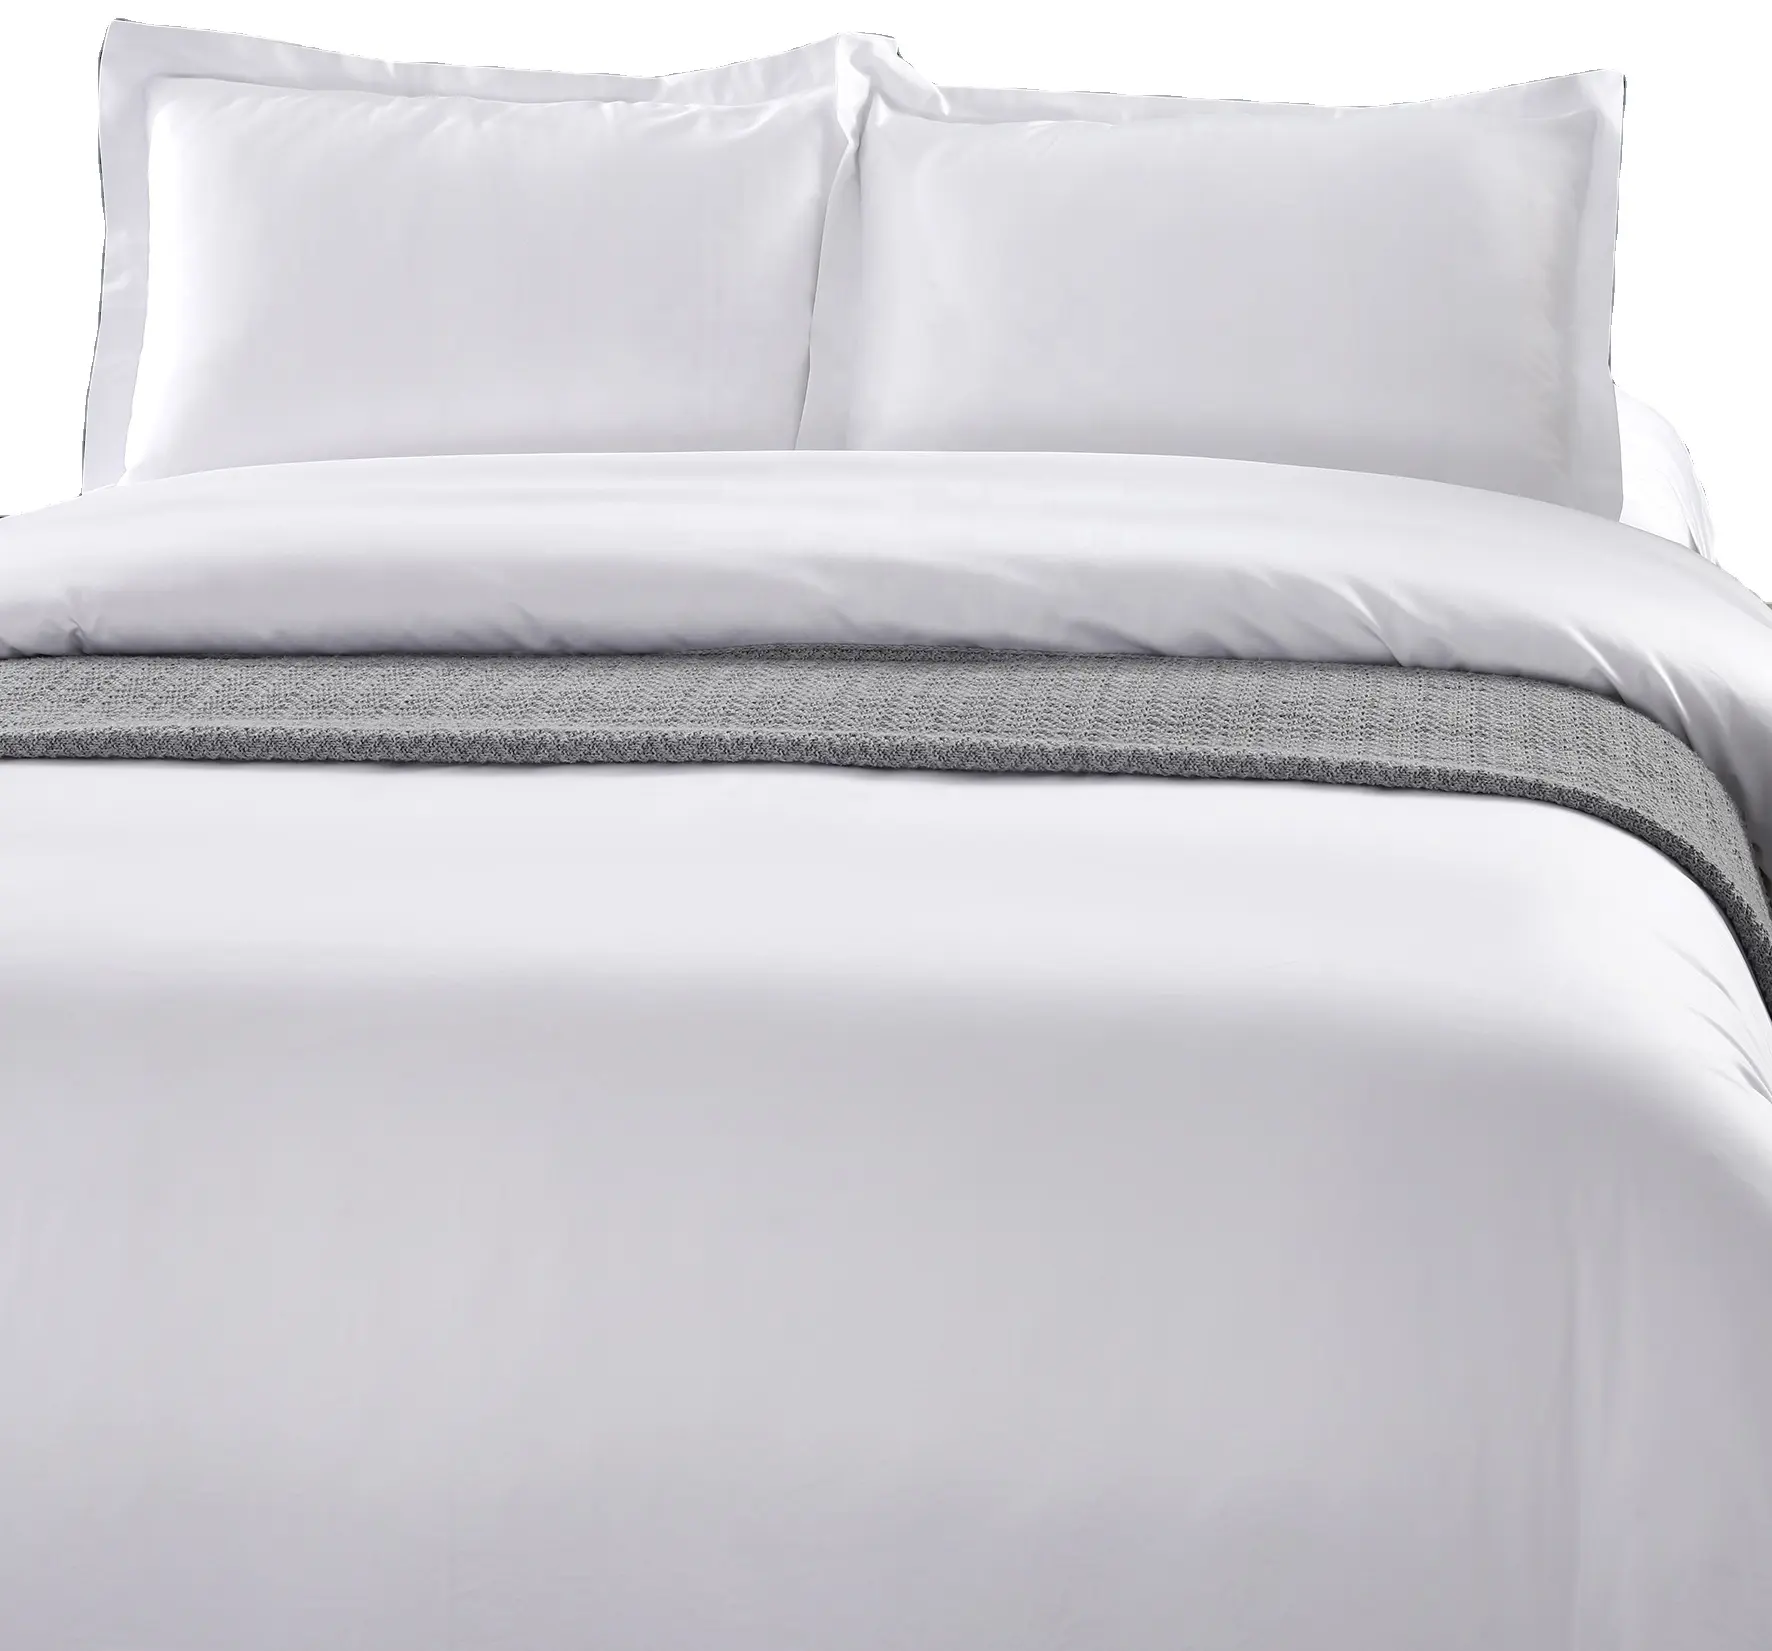 Jogo de cama de luxo, conjunto de lençol para hotel, 100% algodão, atacado, personalizado, tamanho queen, conjunto de lençóis para adultos